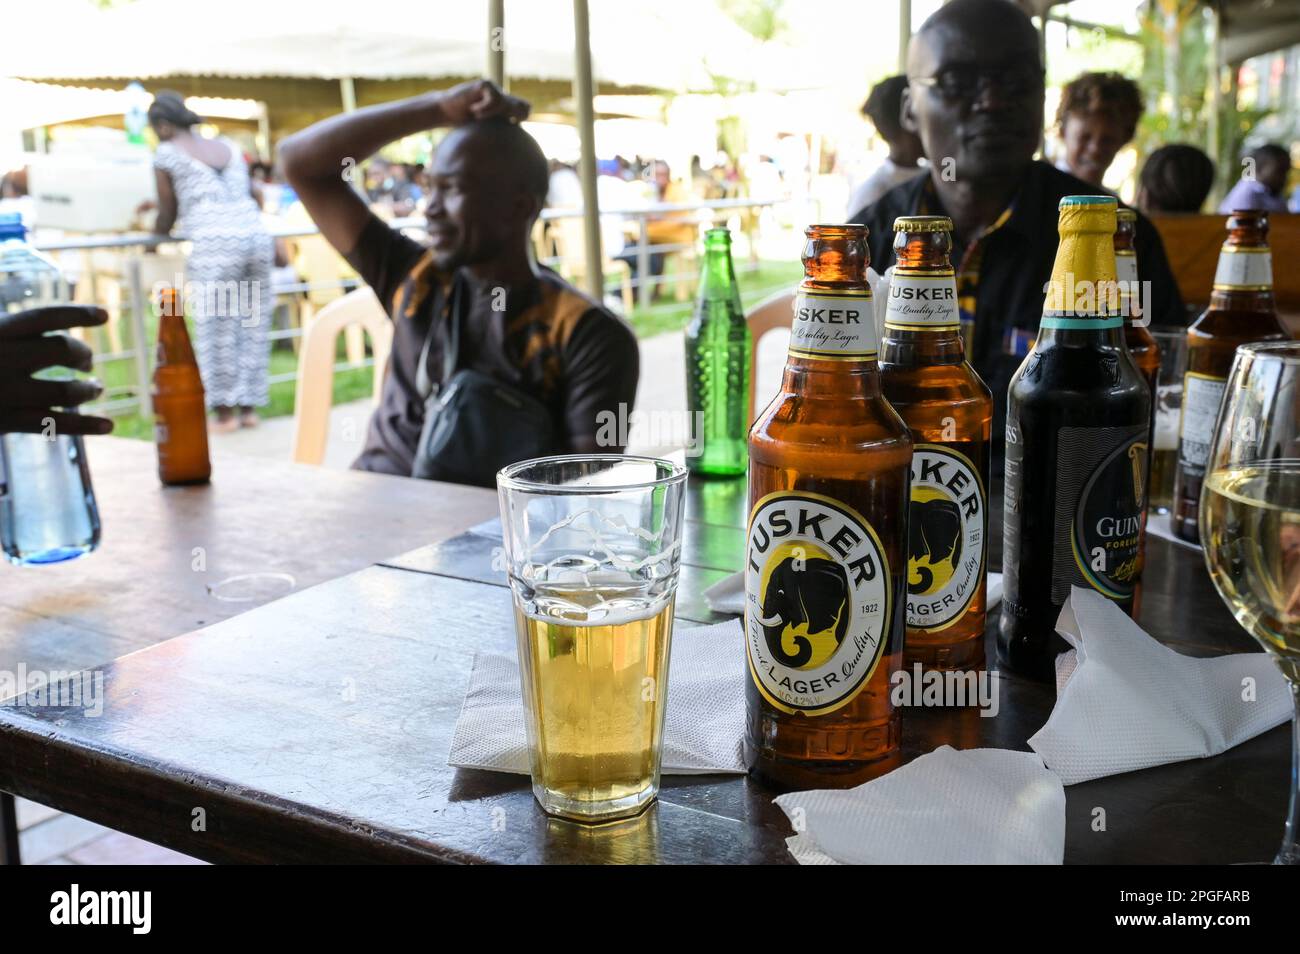 KENIA, Nairobi, Mittelklasse Biergarten, Tusker Bier und Guinness Beear, Marken der british Diageo Group/KENIA, Nairobi, Mittelklasse im Biergarten, Alkoholkonsum, Tusker und Guiness Bier, beides Marken der Diageo Group Stockfoto